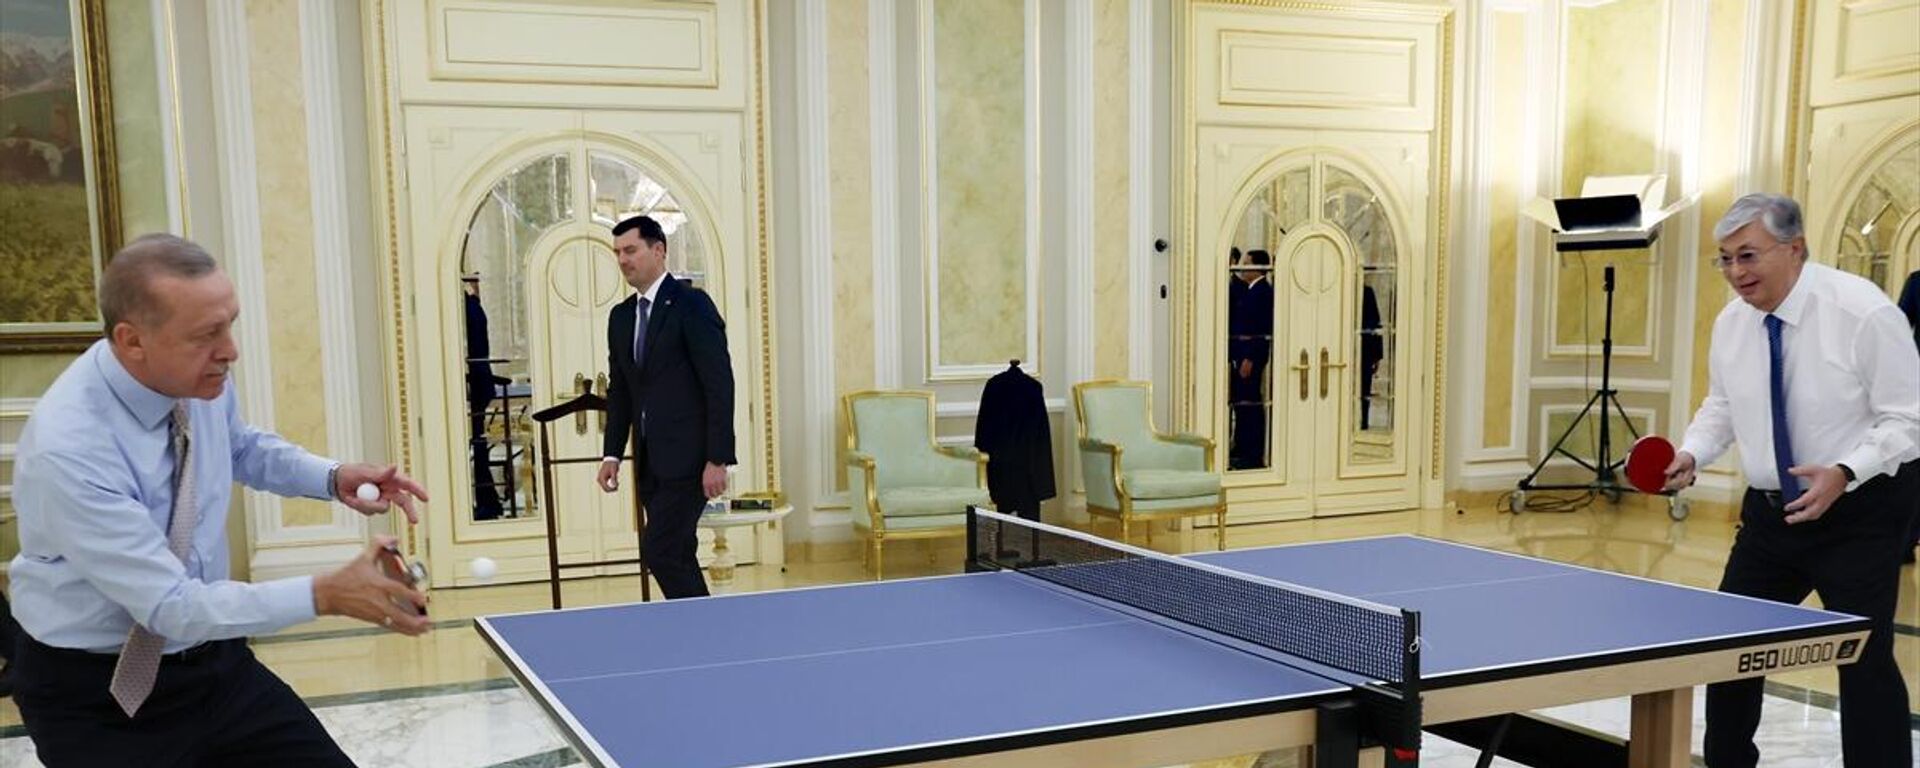 Cumhurbaşkanı Erdoğan, Tokayev ile masa tenisi oynadı - Sputnik Türkiye, 1920, 12.10.2022